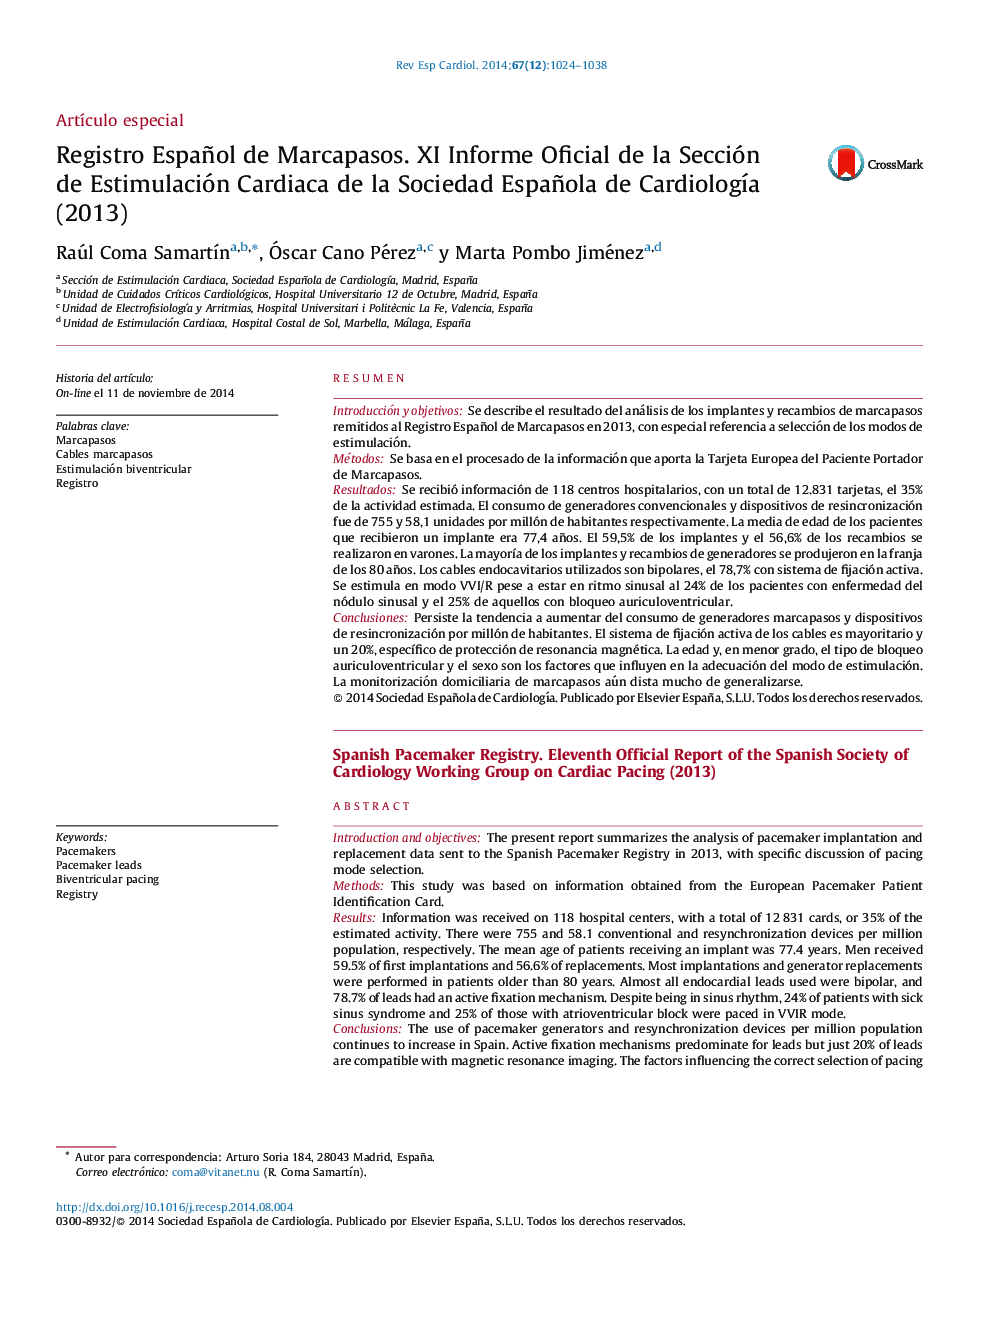 Registro Español de Marcapasos. XIÂ Informe Oficial deÂ laÂ Sección deÂ Estimulación Cardiaca deÂ laÂ Sociedad Española deÂ CardiologÃ­a (2013)